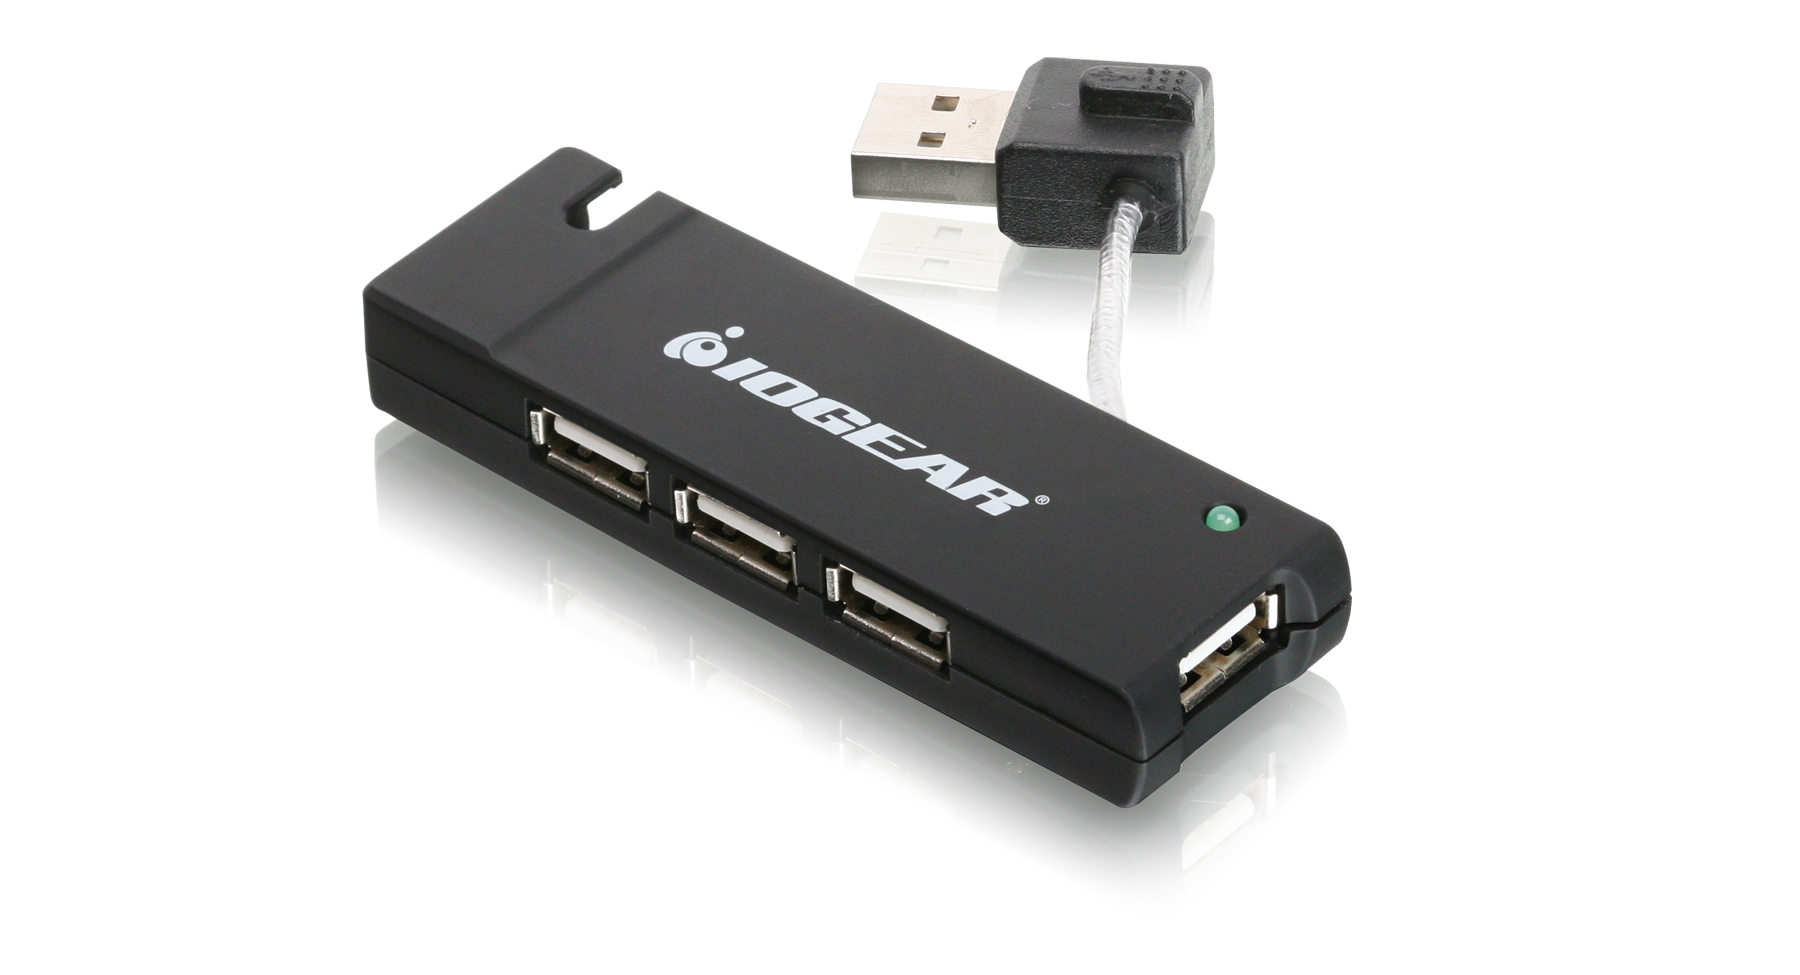 Беспроводная usb связь. USB-концентратор Hi-Speed USB 2.0 4-Port Hub. Wireless USB Hub IOGEAR. 4 Port USB 2.0 Hi-Speed Hub. IOGEAR Wireless USB 4 Port Hub & Adapter Kit guwh104kit.